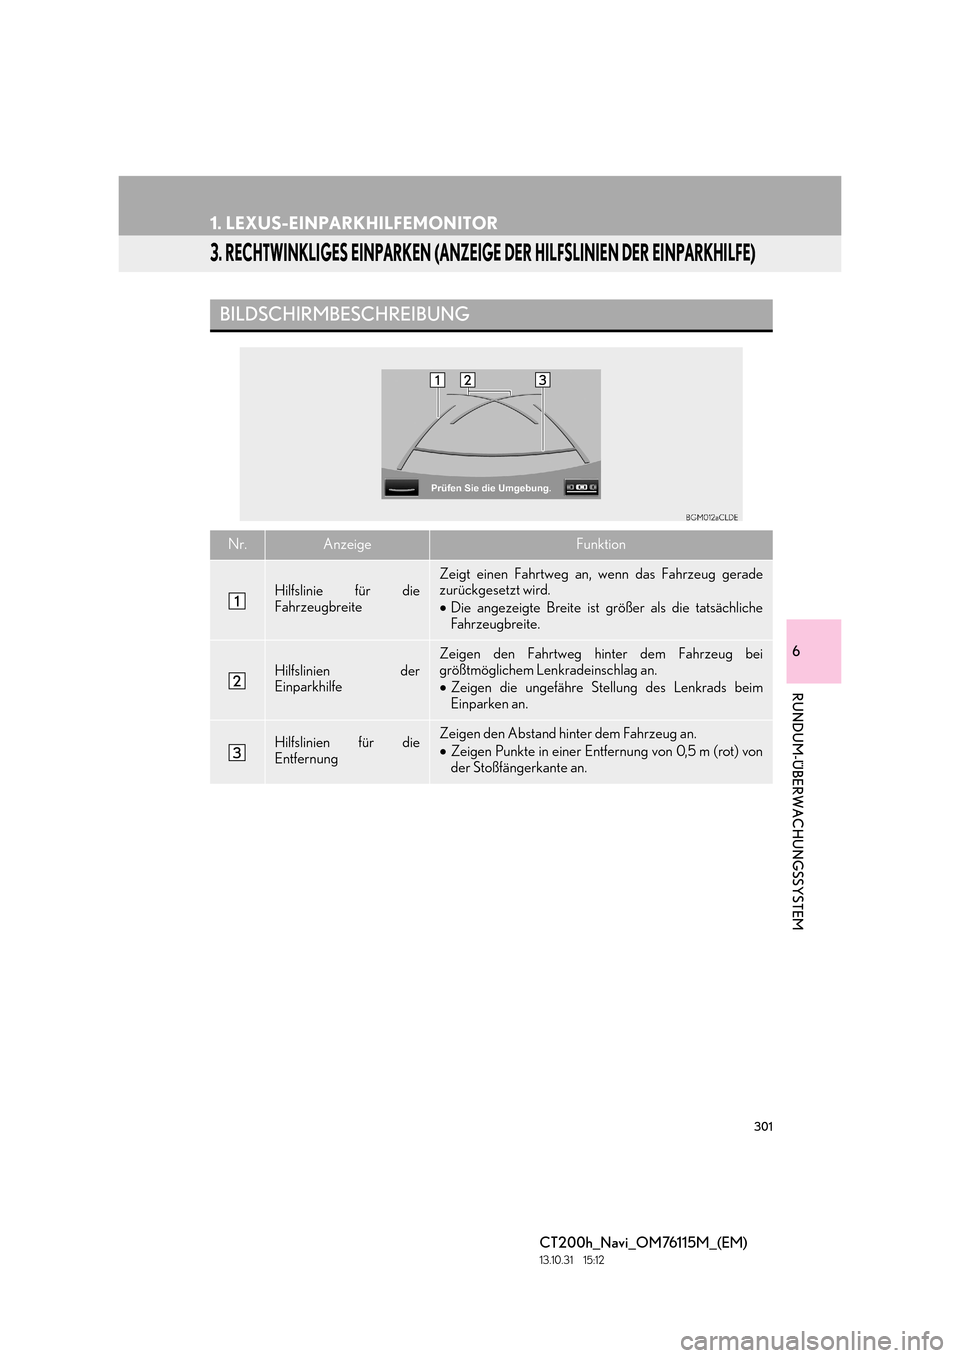 Lexus CT200h 2014  Navigation Handbuch (in German) 301
1. LEXUS-EINPARKHILFEMONITOR
CT200h_Navi_OM76115M_(EM)
13.10.31     15:12
6
RUNDUM-ÜBERWACHUNGSSYSTEM
3. RECHTWINKLIGES EINPARKEN (ANZEIGE DER HILFSLINIEN DER EINPARKHILFE)
BILDSCHIRMBESCHREIBUNG